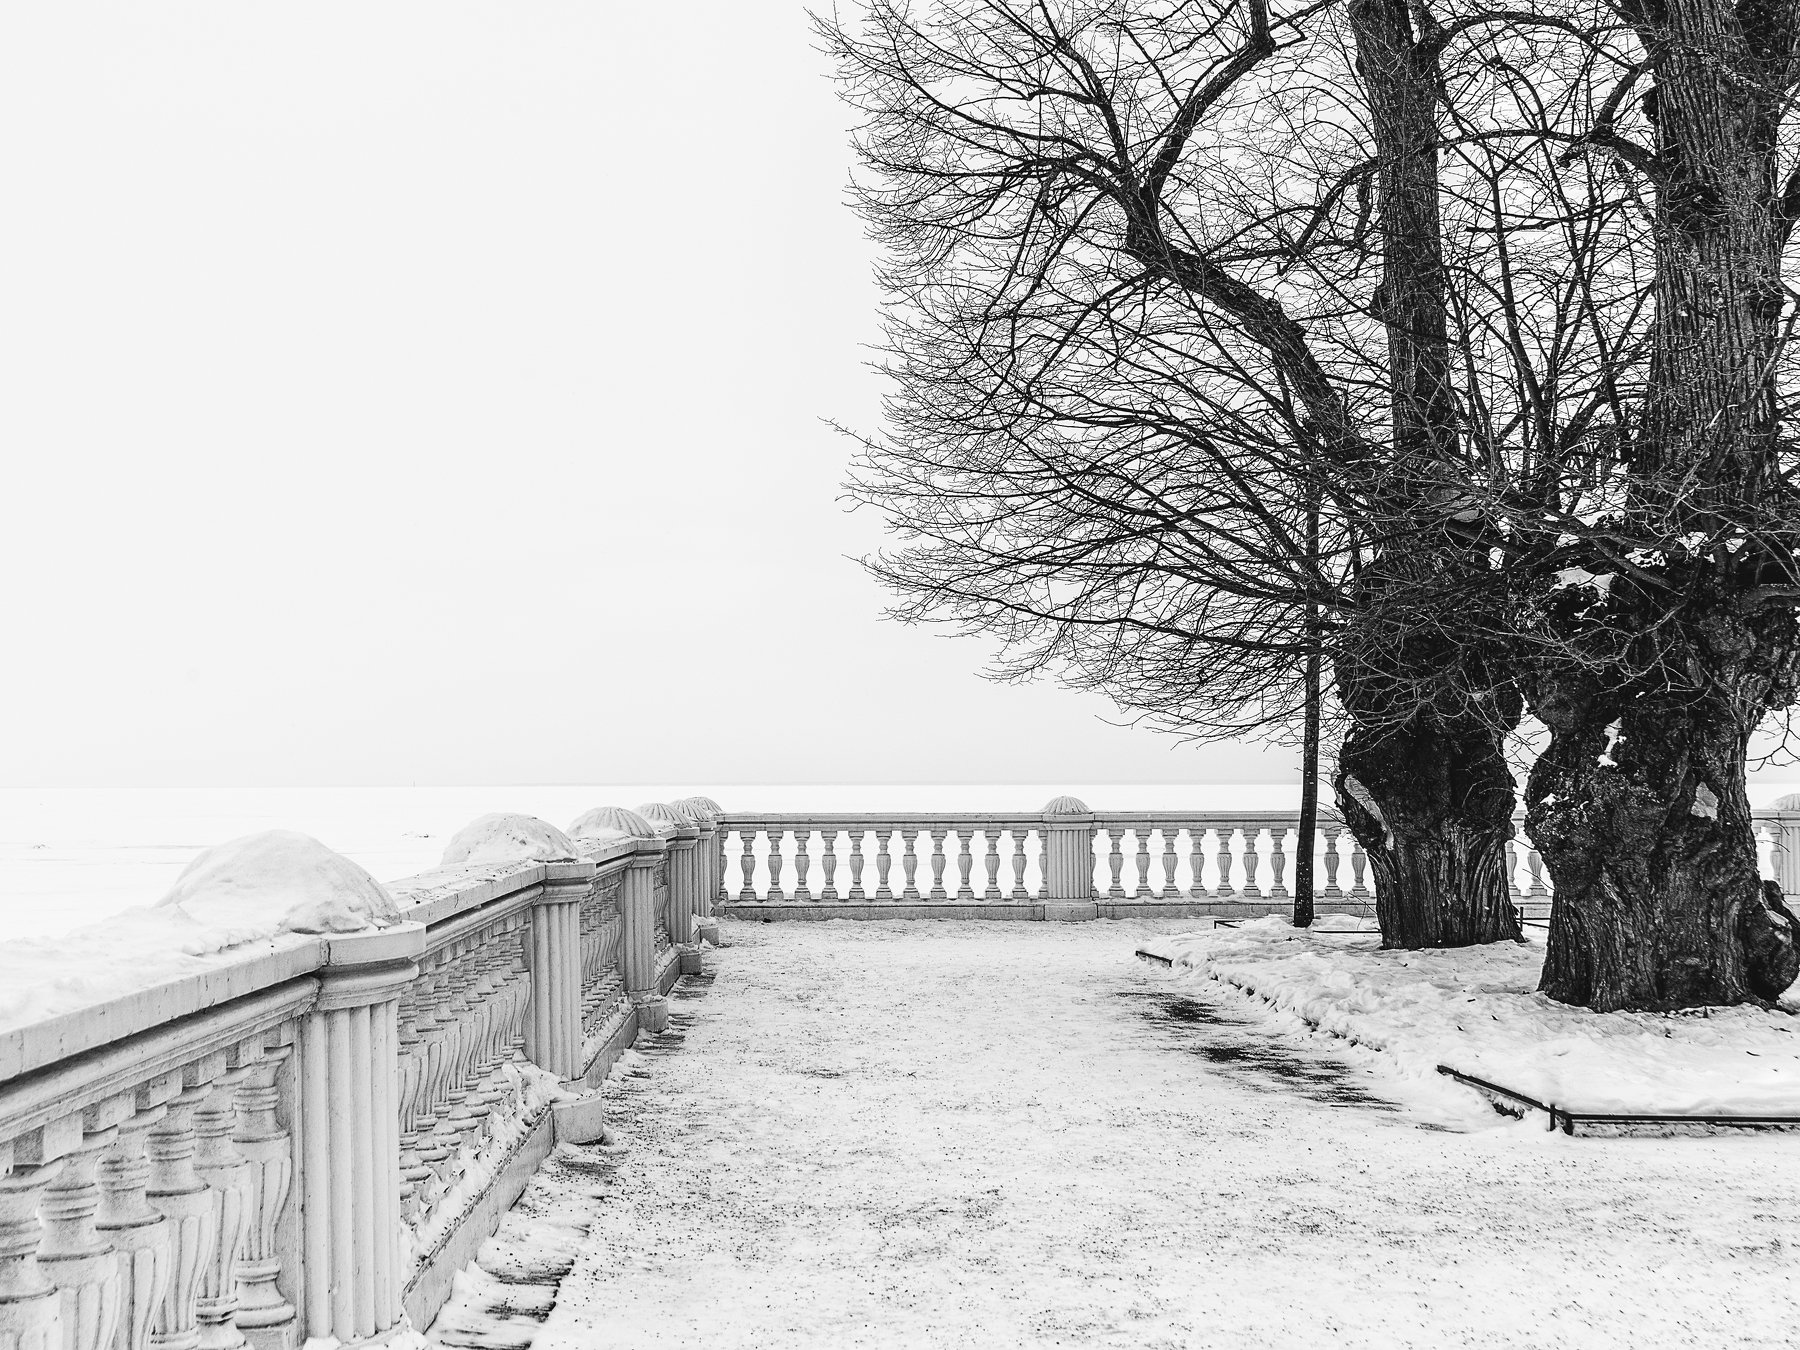 парк залив зима весна снег март прогулка никон, Вавилова Елизавета